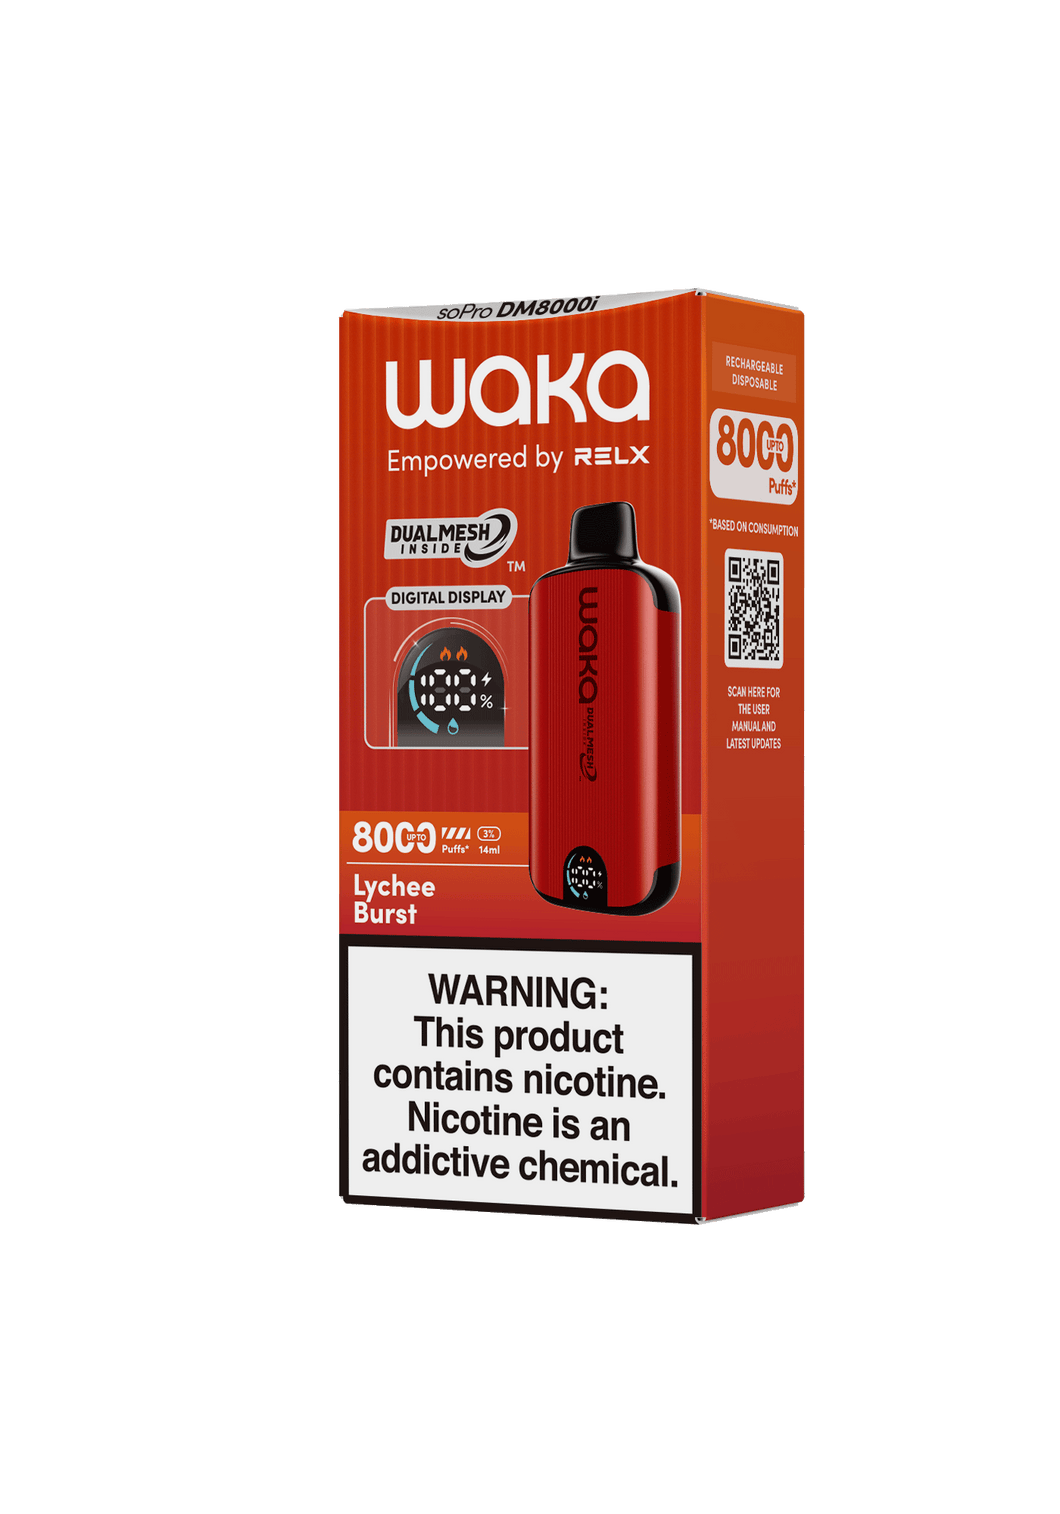 Waka DM8000i 3% - Lychee Burst